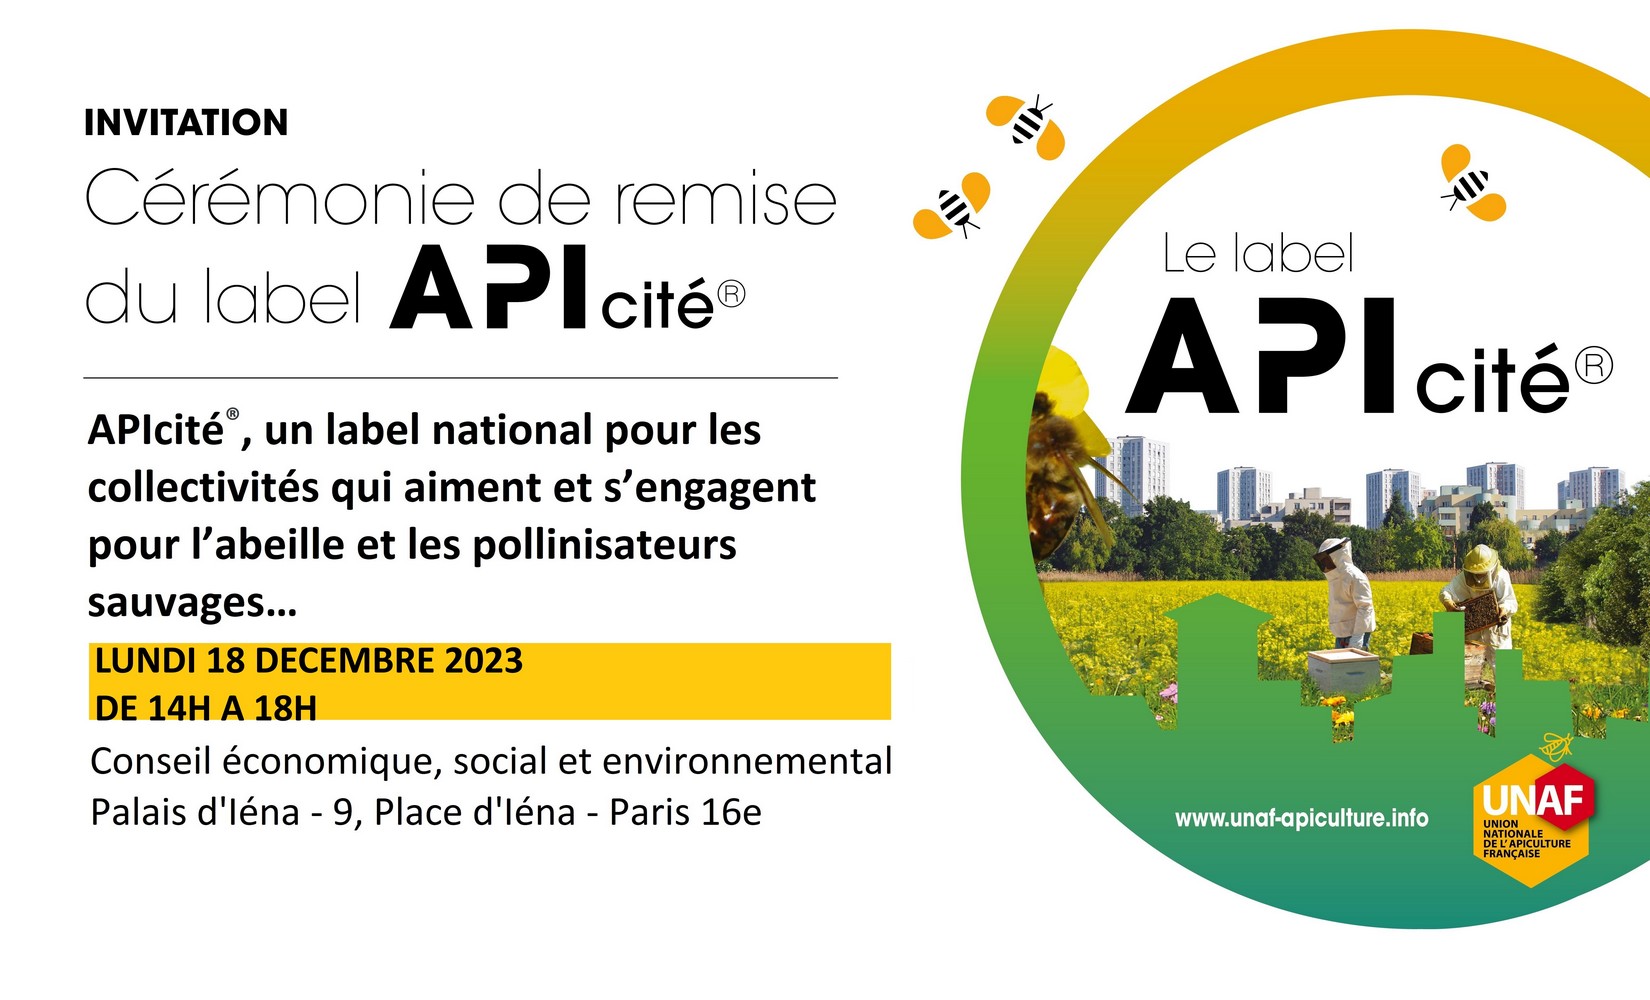 Dernières actualités - Label APIcité 2023 - 3 abeilles